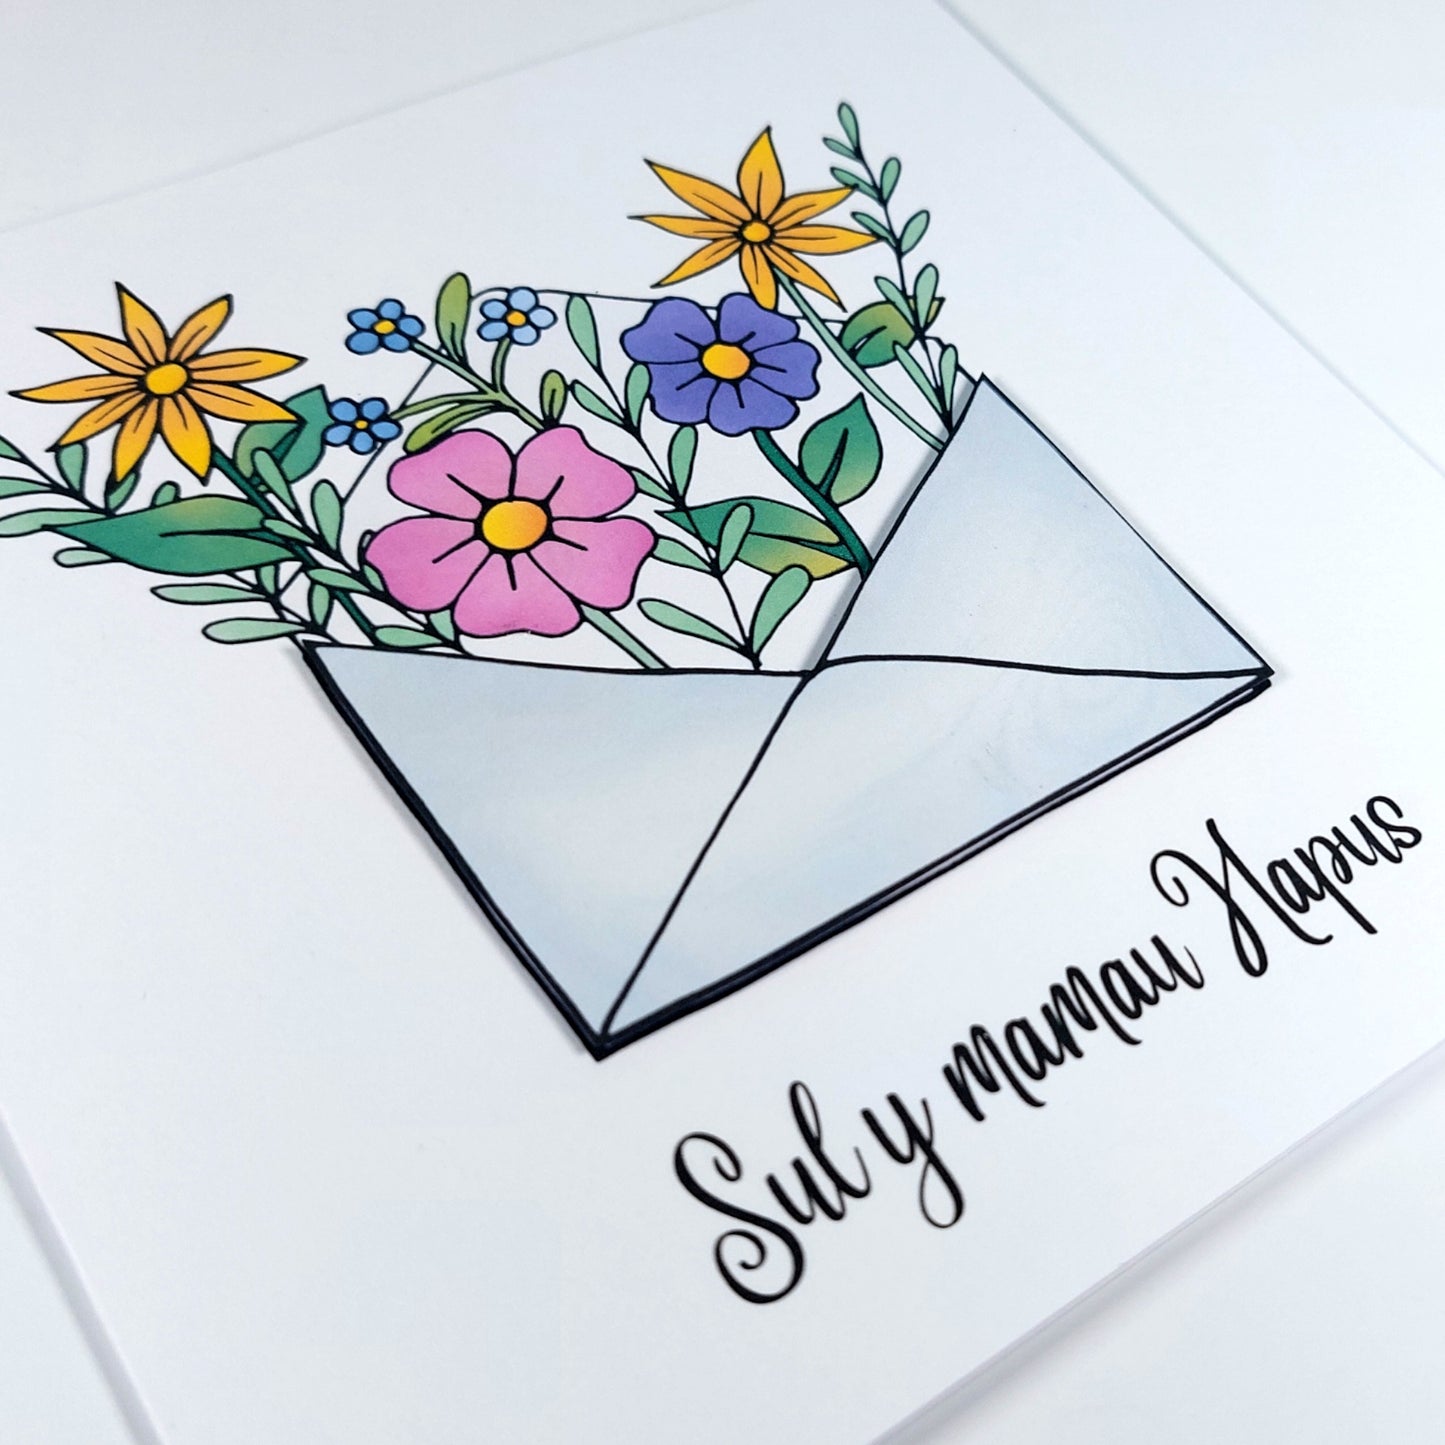 Flower Envelope Sul y mamau hapus (Mothers day) WELSH